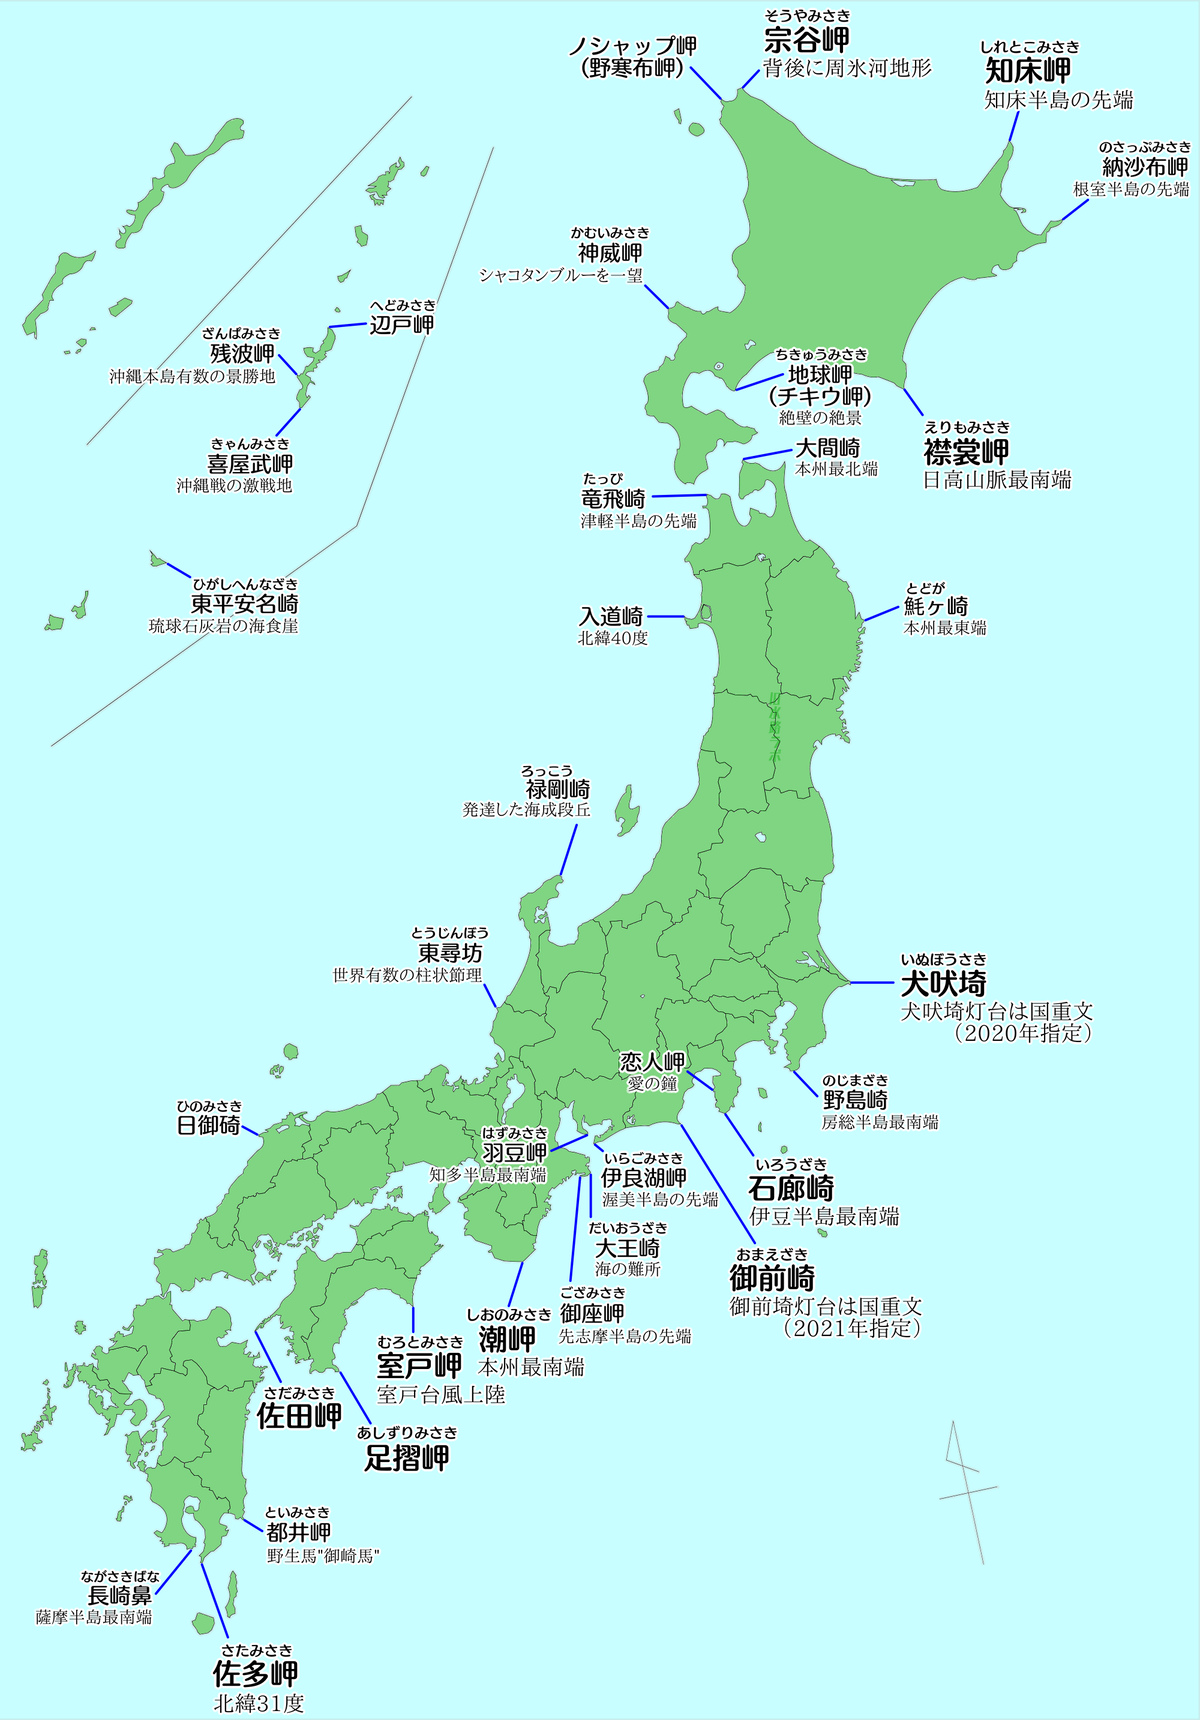 地図 日本の主な岬マップ 改訂版 おまけつき 江戸東京旧水路ラボ 本所支部